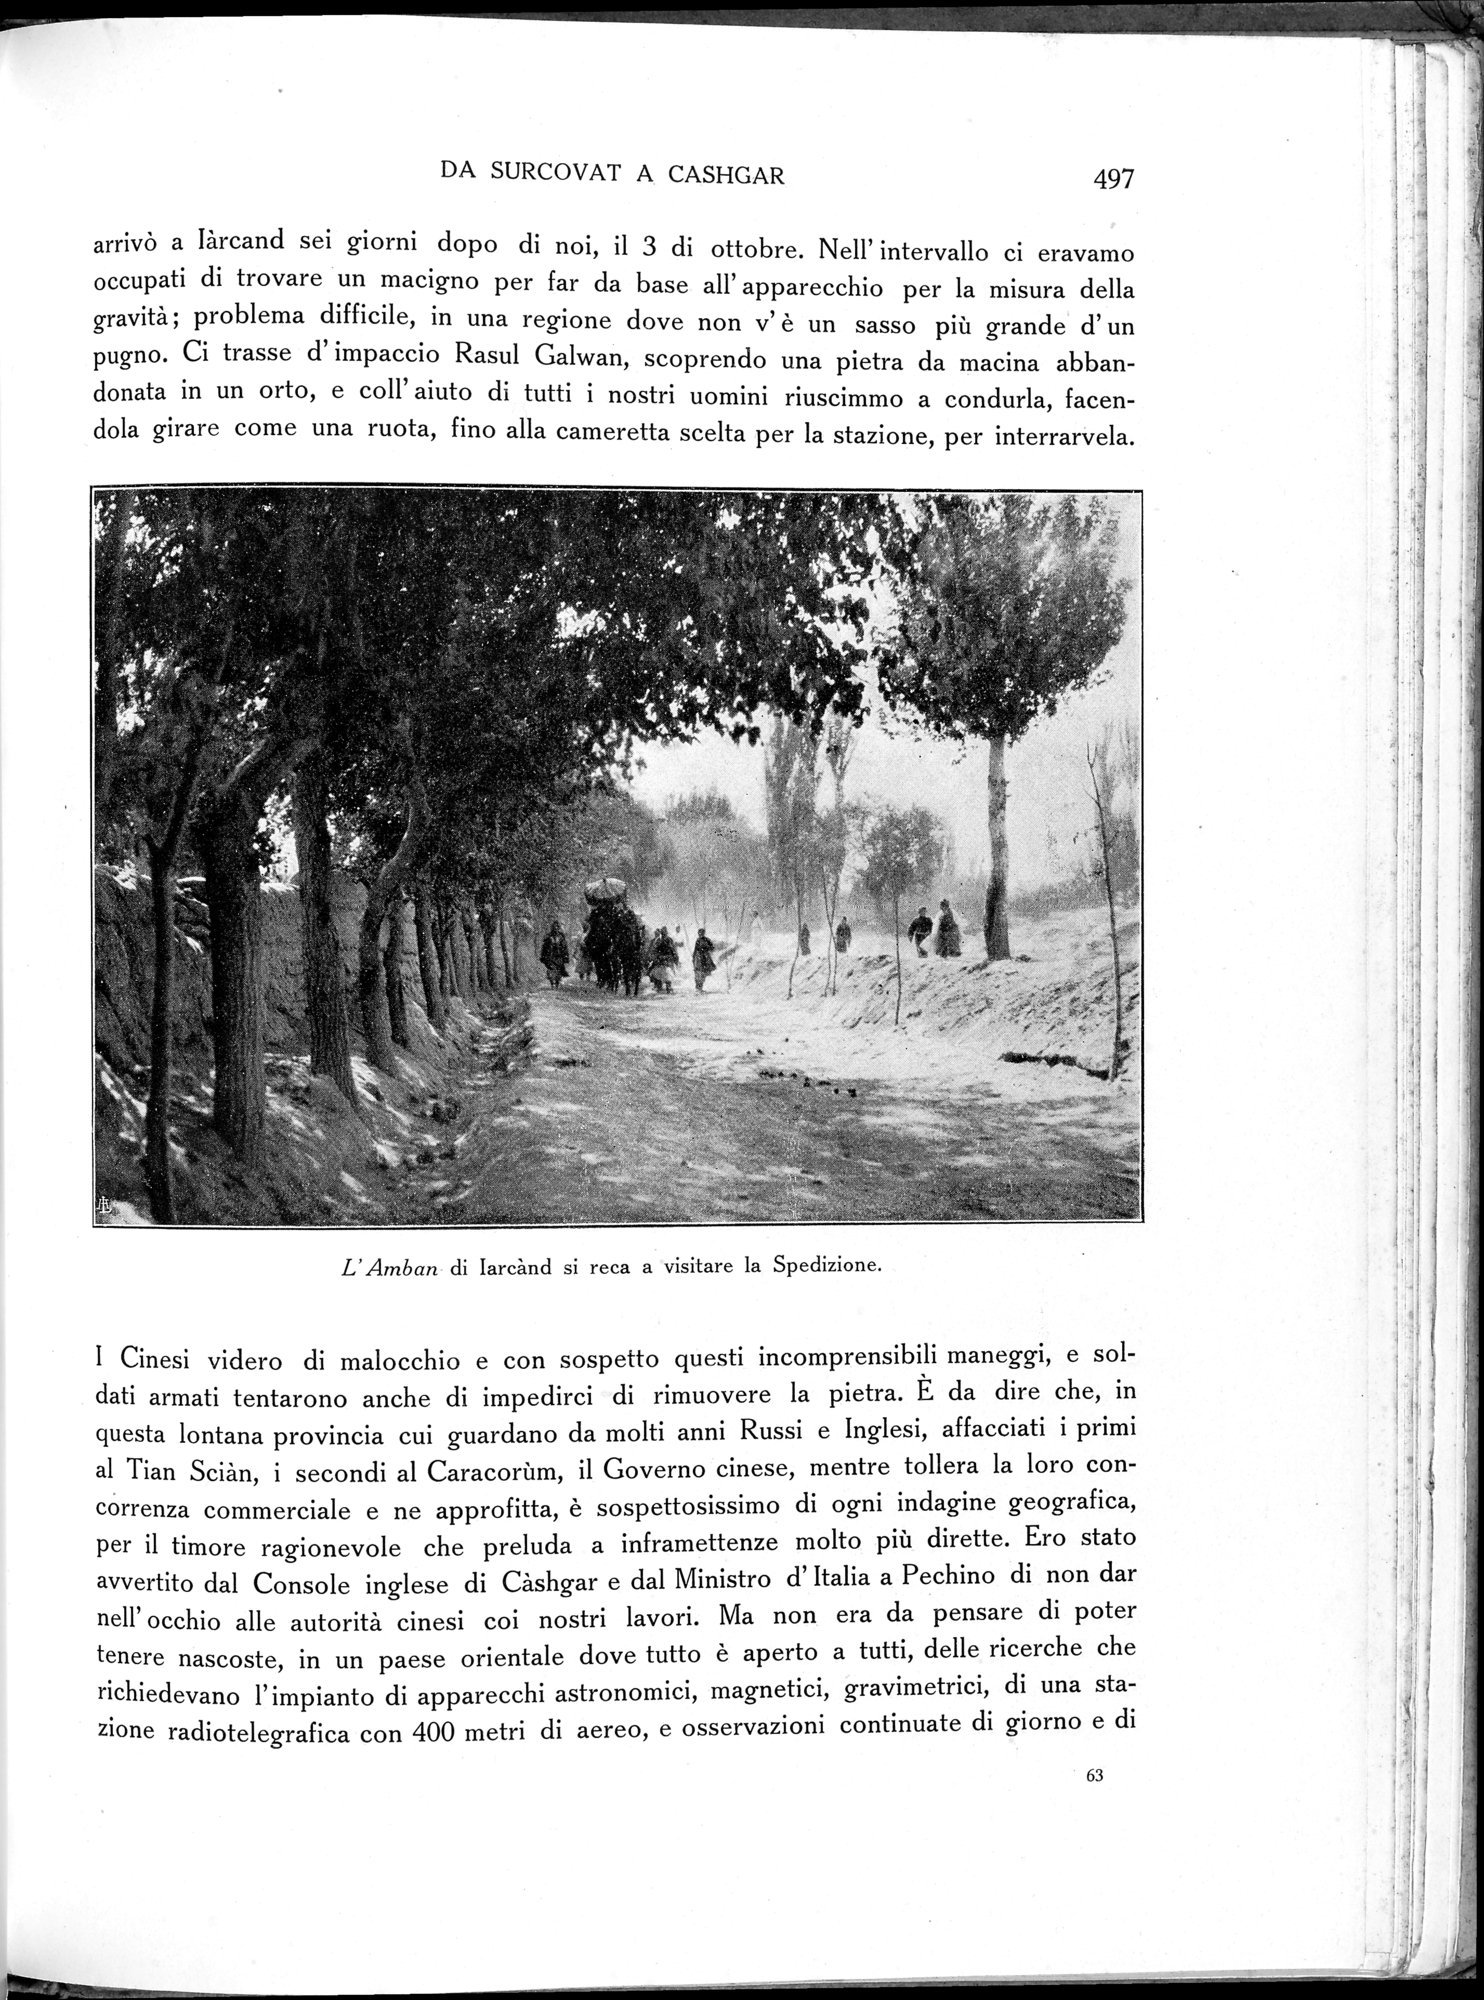 Storia della Spedizione Scientifica Italiana nel Himàlaia, Caracorùm e Turchestàn Cinese(1913-1914) : vol.1 / Page 585 (Grayscale High Resolution Image)